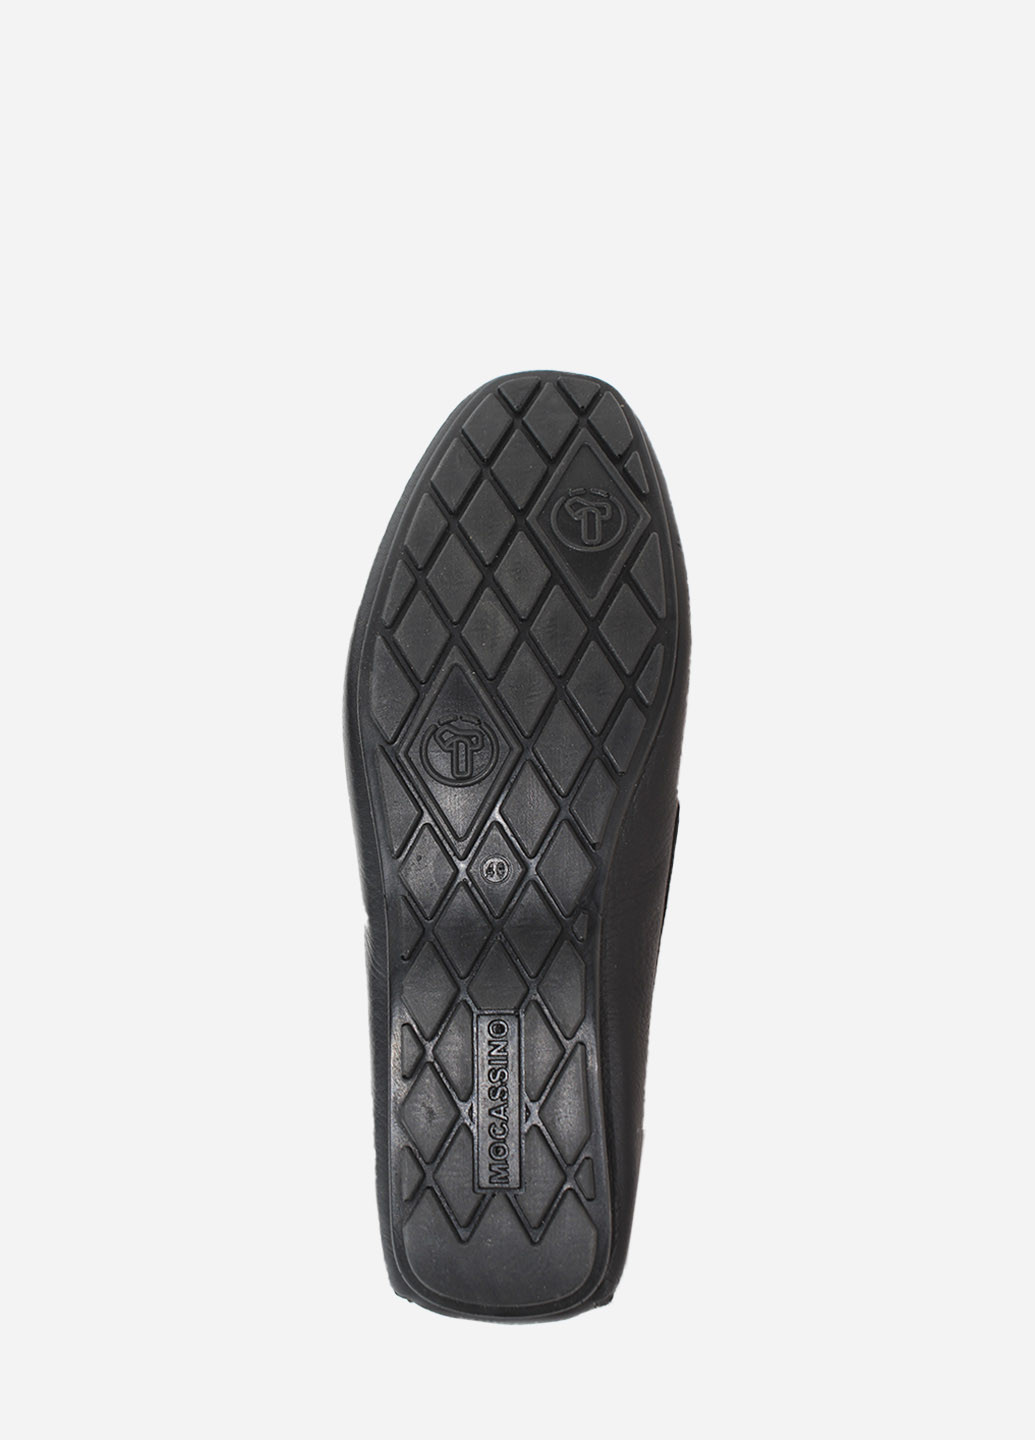 Черные осенние ботинки rt733-02-31 черный Tibet